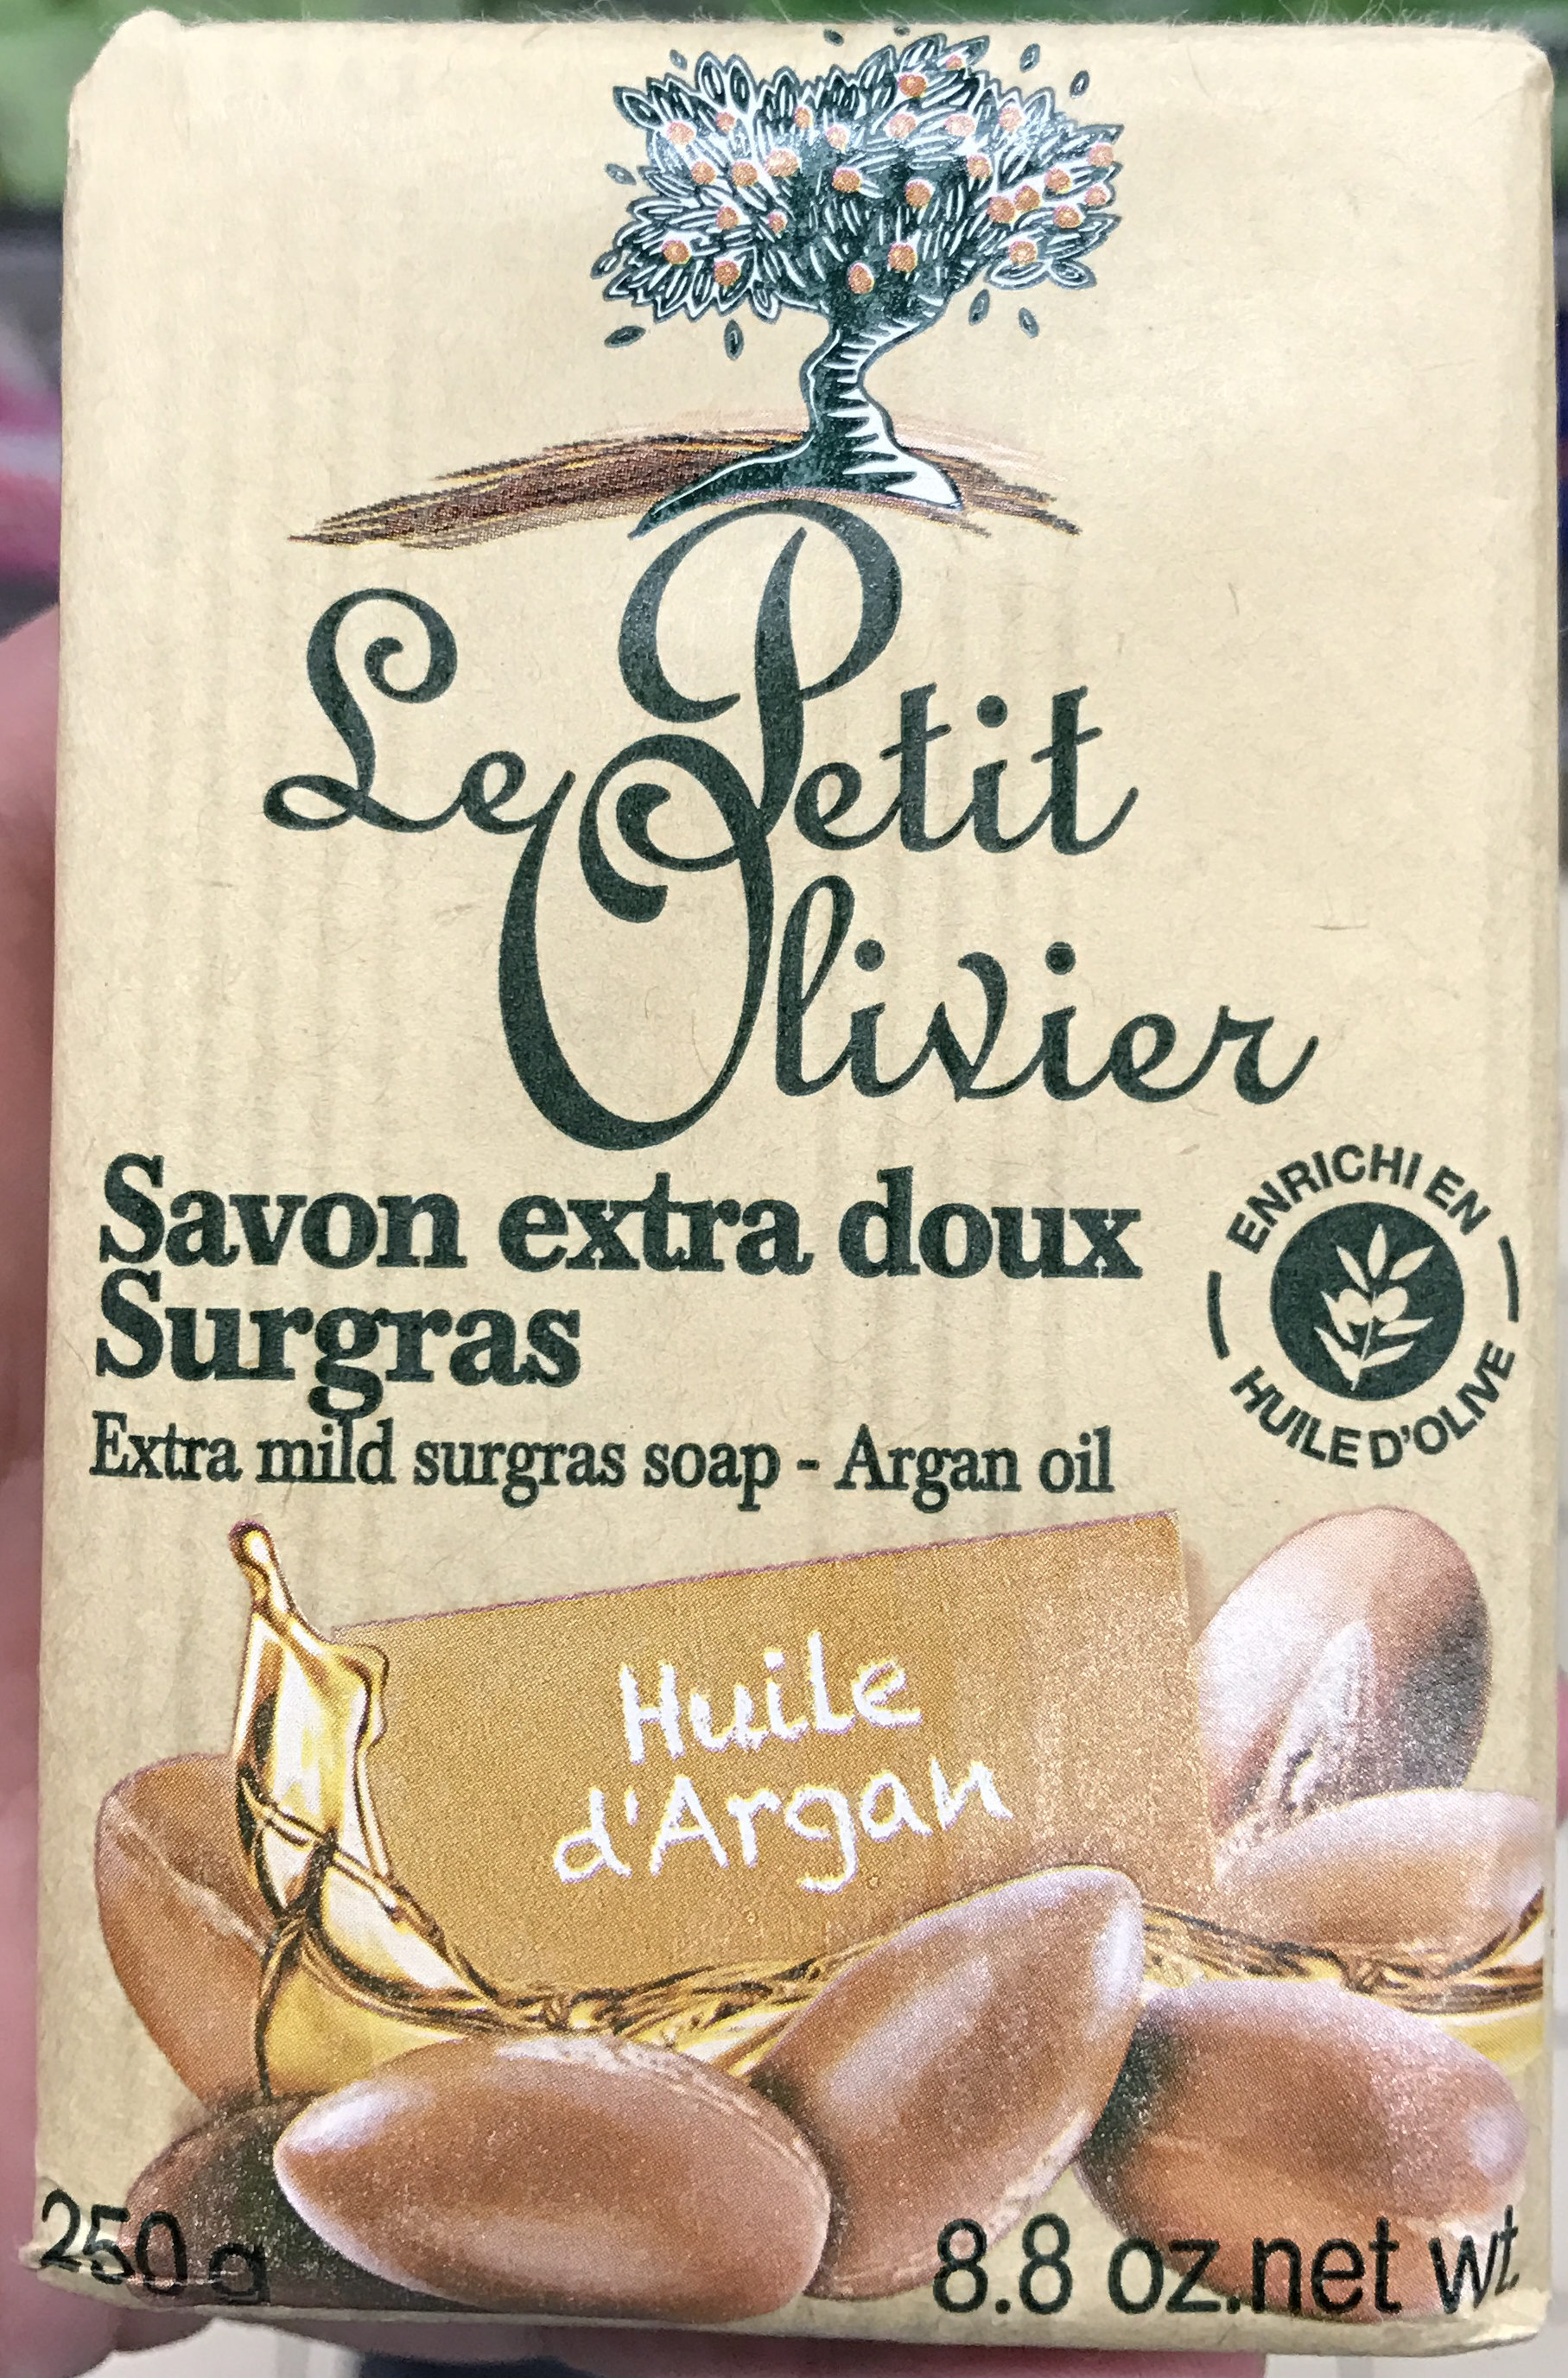 Savon extra doux Surgras Huile d'Argan - Product - fr